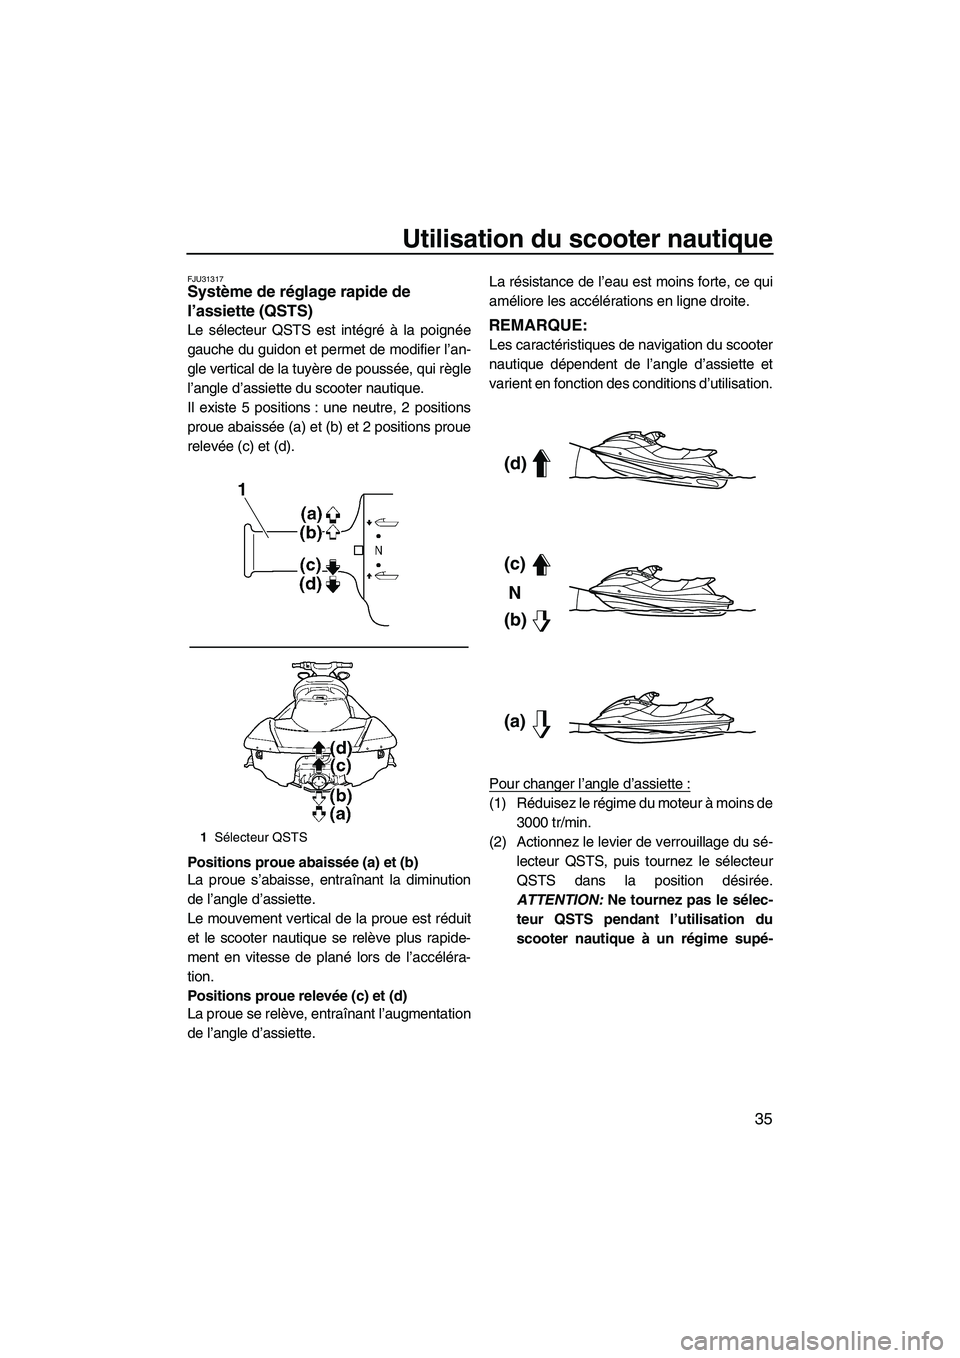 YAMAHA SVHO 2011  Notices Demploi (in French) Utilisation du scooter nautique
35
FJU31317Système de réglage rapide de 
l’assiette (QSTS) 
Le sélecteur QSTS est intégré à la poignée
gauche du guidon et permet de modifier l’an-
gle verti